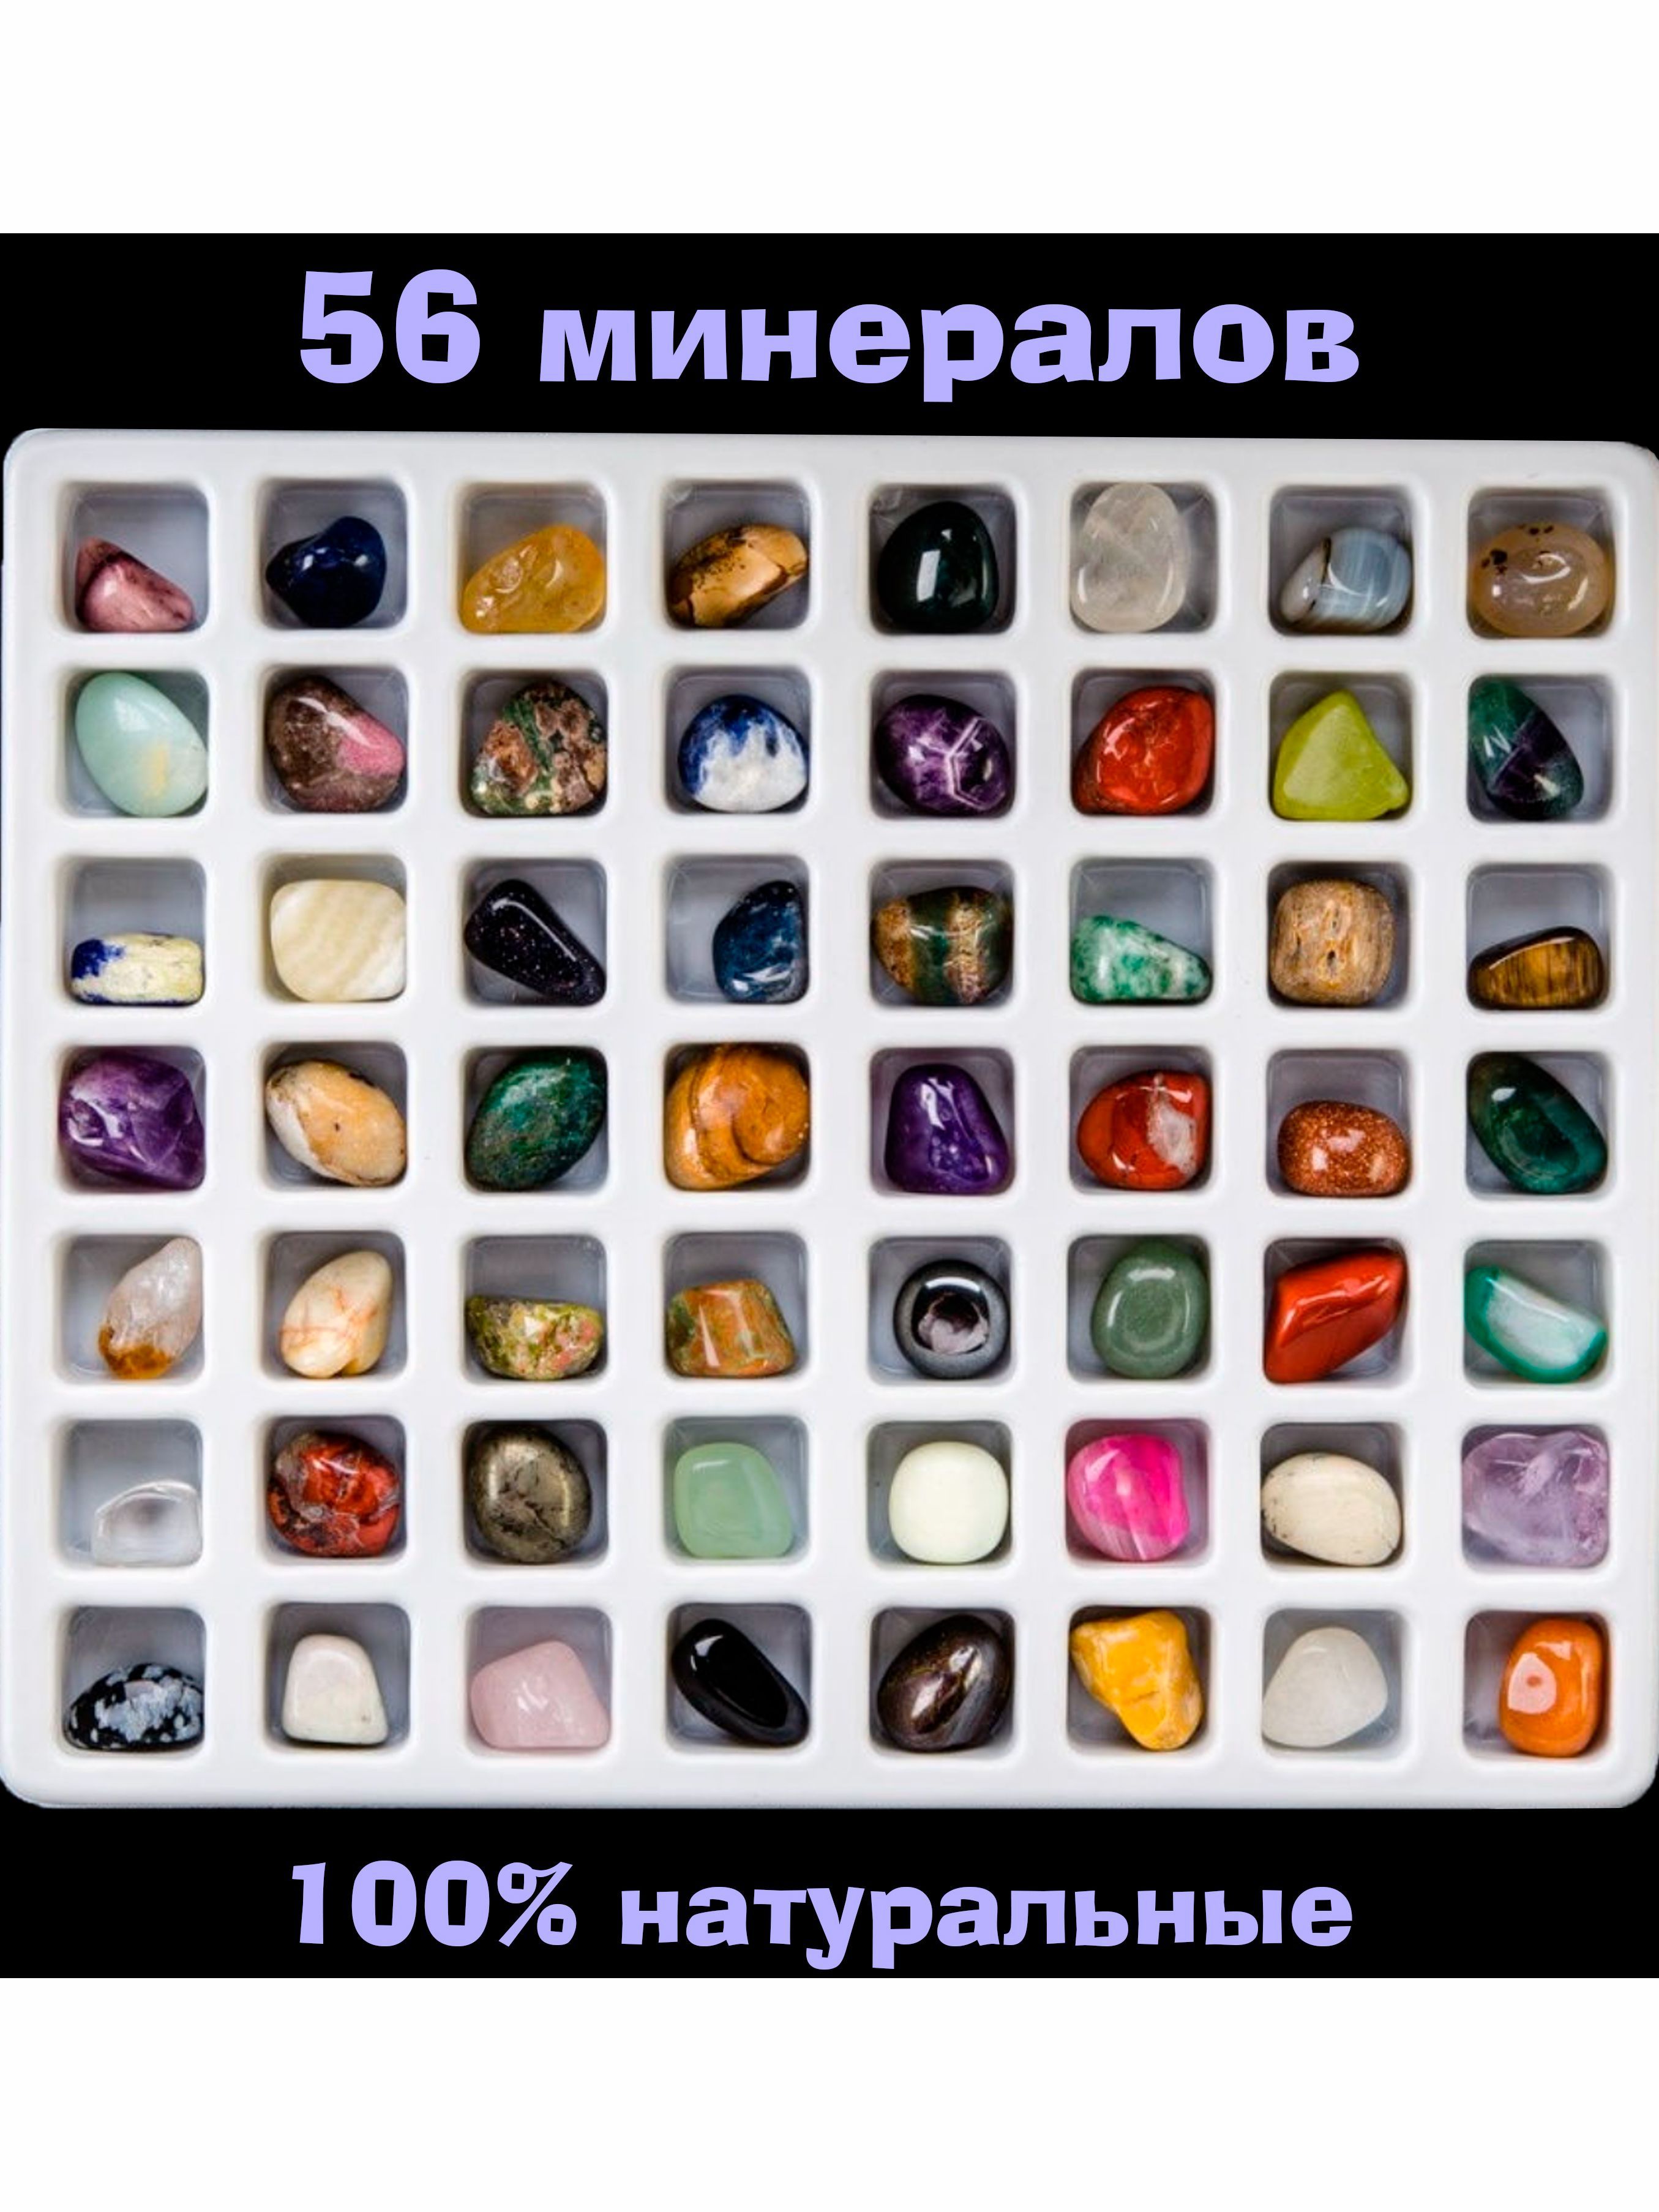 Тест самоцветов. Коллекция камней и минералов №2 (1-1,5 см). Коллекция камней и минералов №2. Набор минералов Самоцветы 15 камней. Набор минералов Worldwide Gemstones 35 kinds.